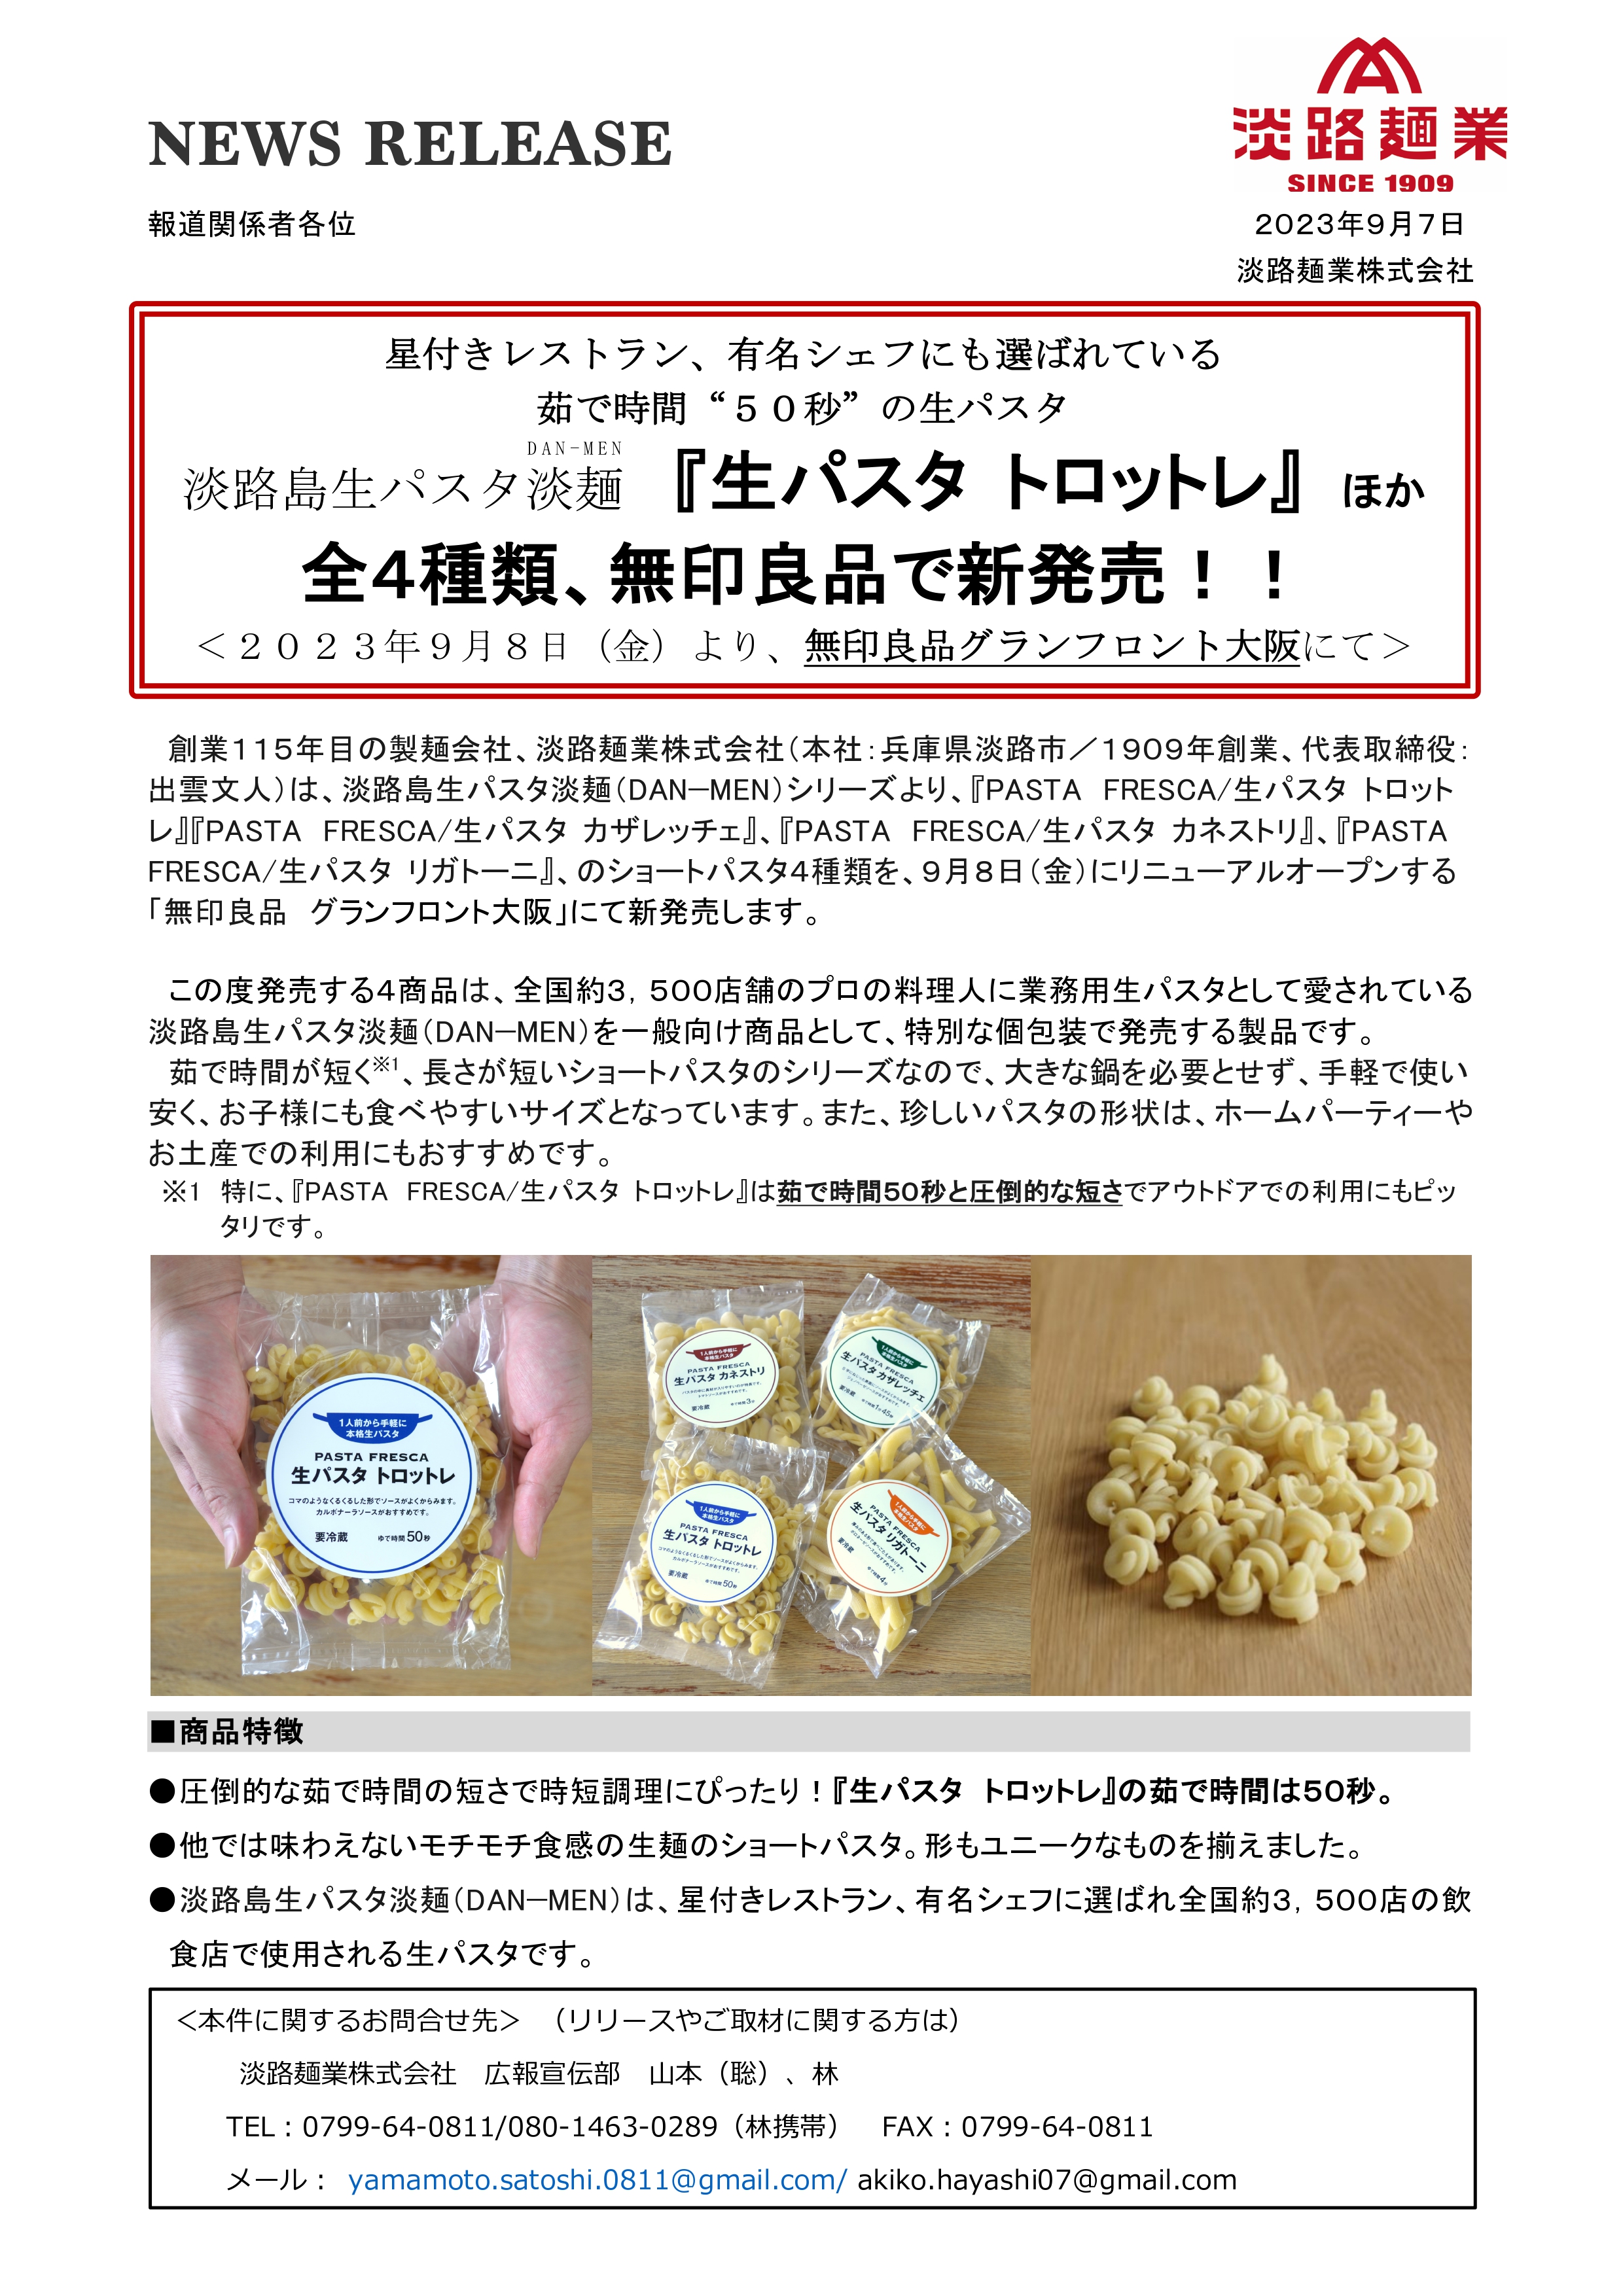 【リリース】淡路麺業株式会社_20230907_001.jpg